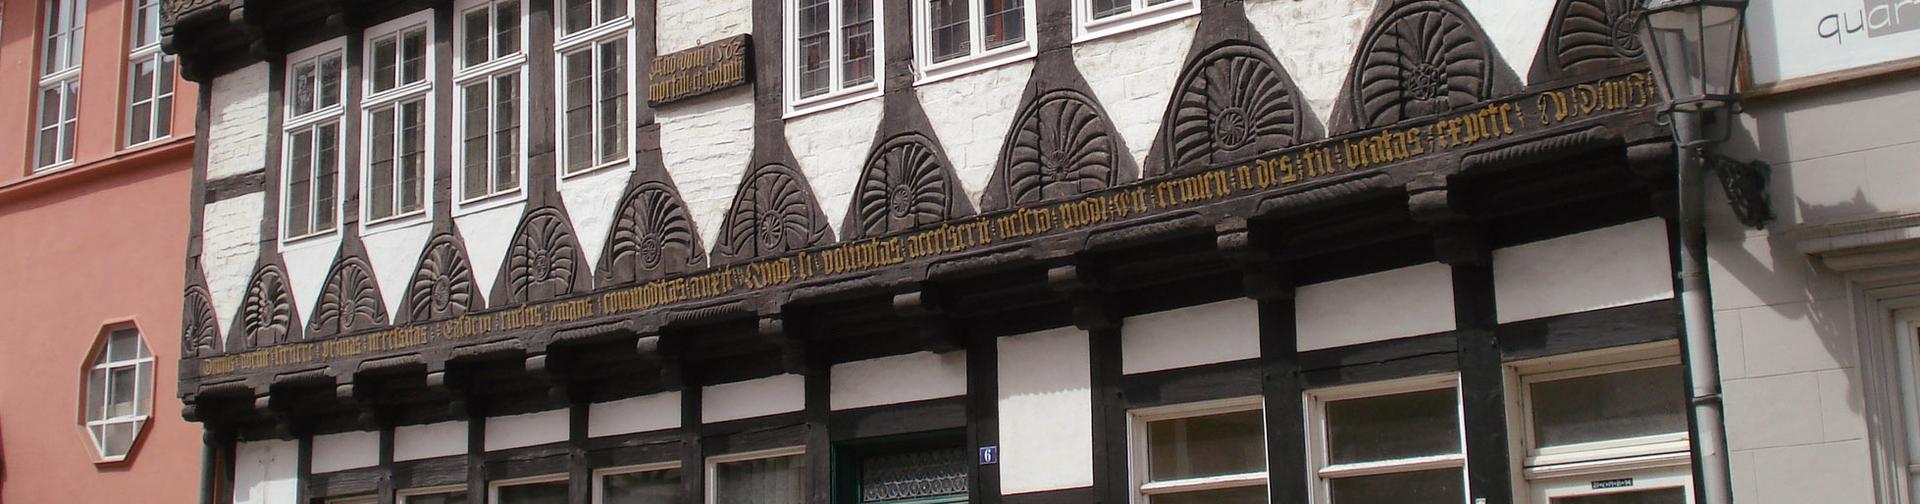 Quedlinburg. The Schneemelcher Haus